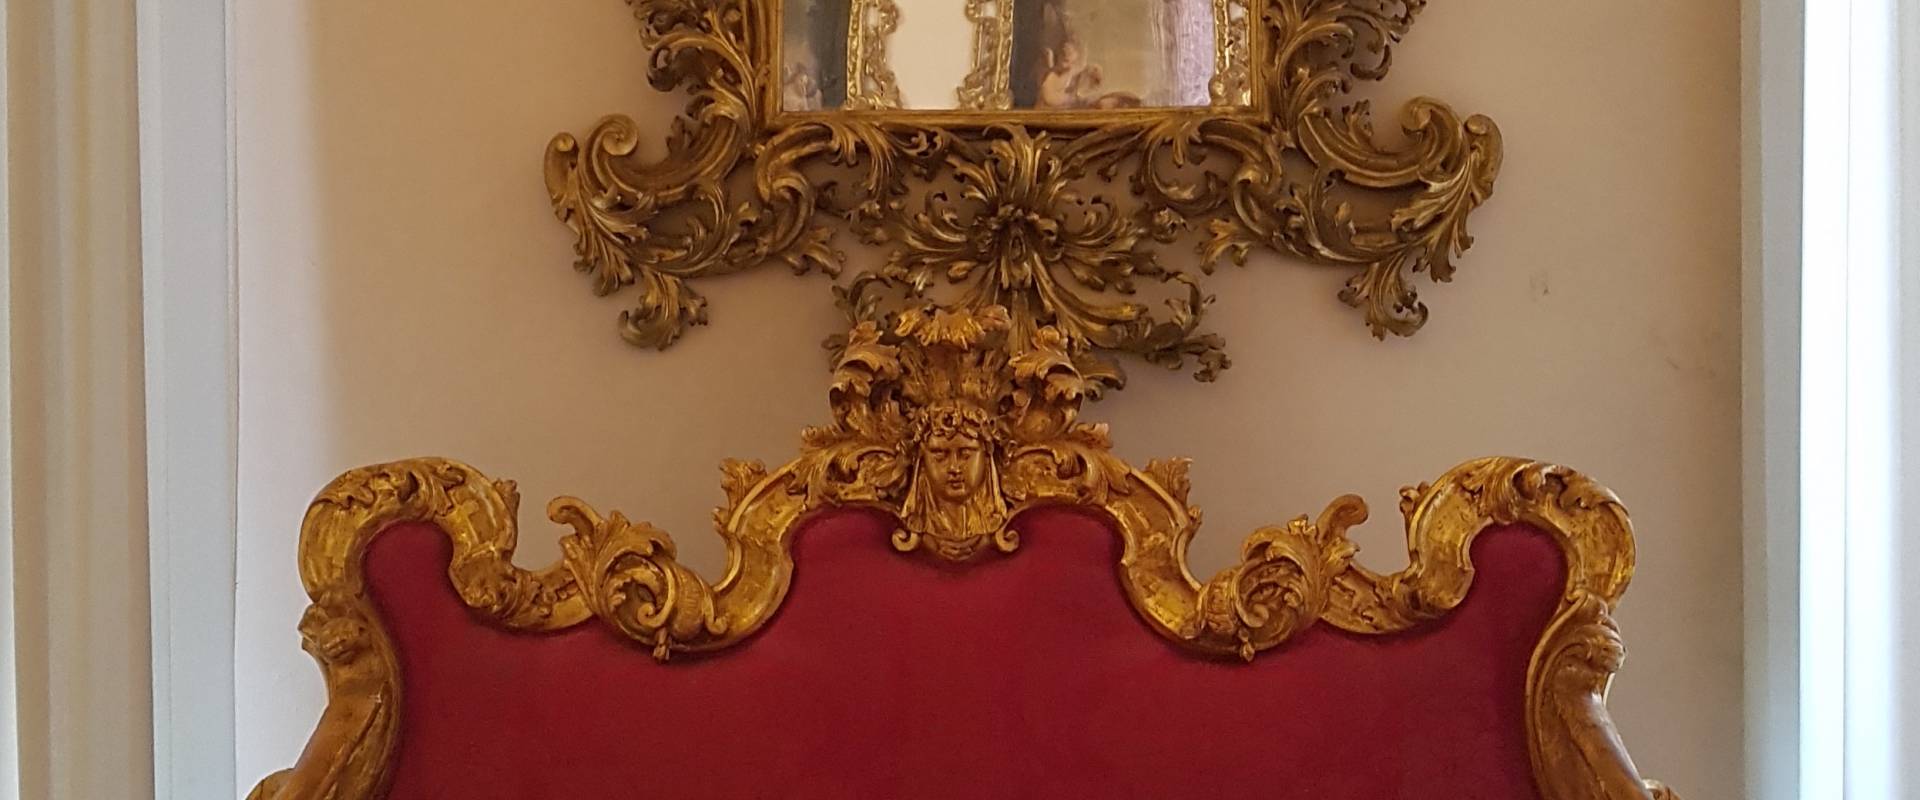 Palazzo Pepoli Campogrande - Sala Felsina specchio e divano foto di Opi1010